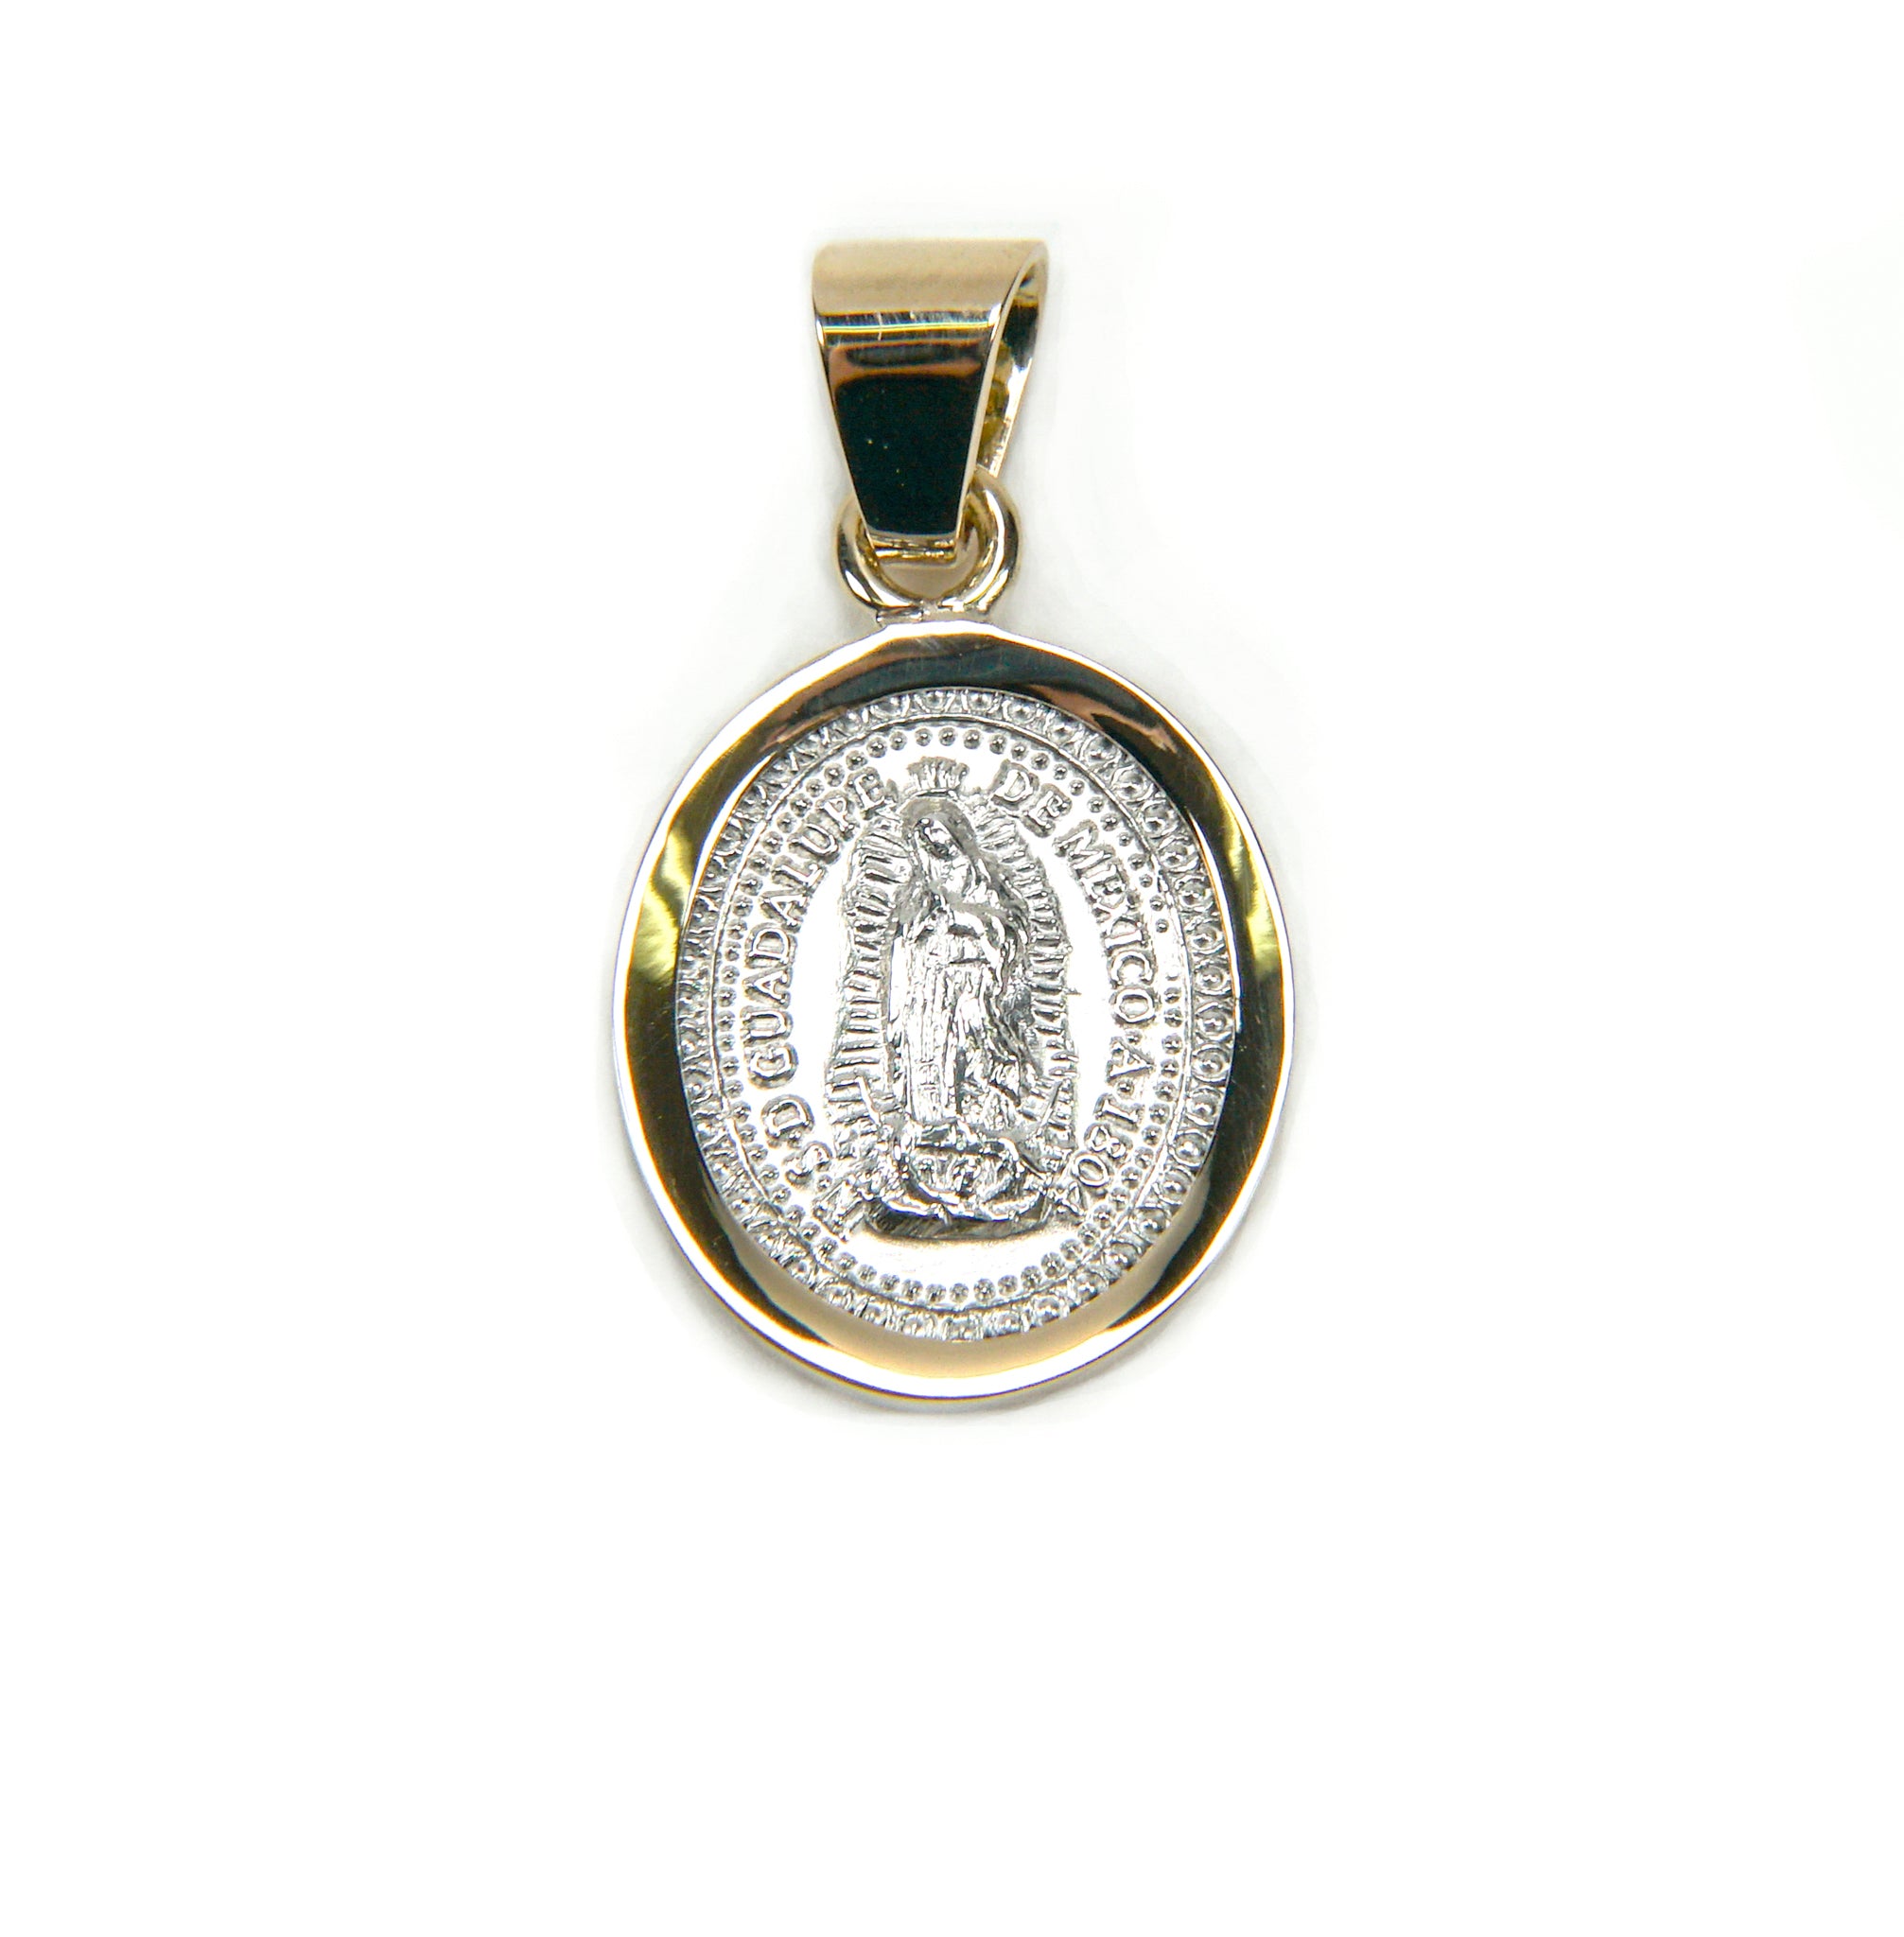 Oval 4: Medalla de Guadalupe en Plata con Bisel de Oro 14k tamaño chico